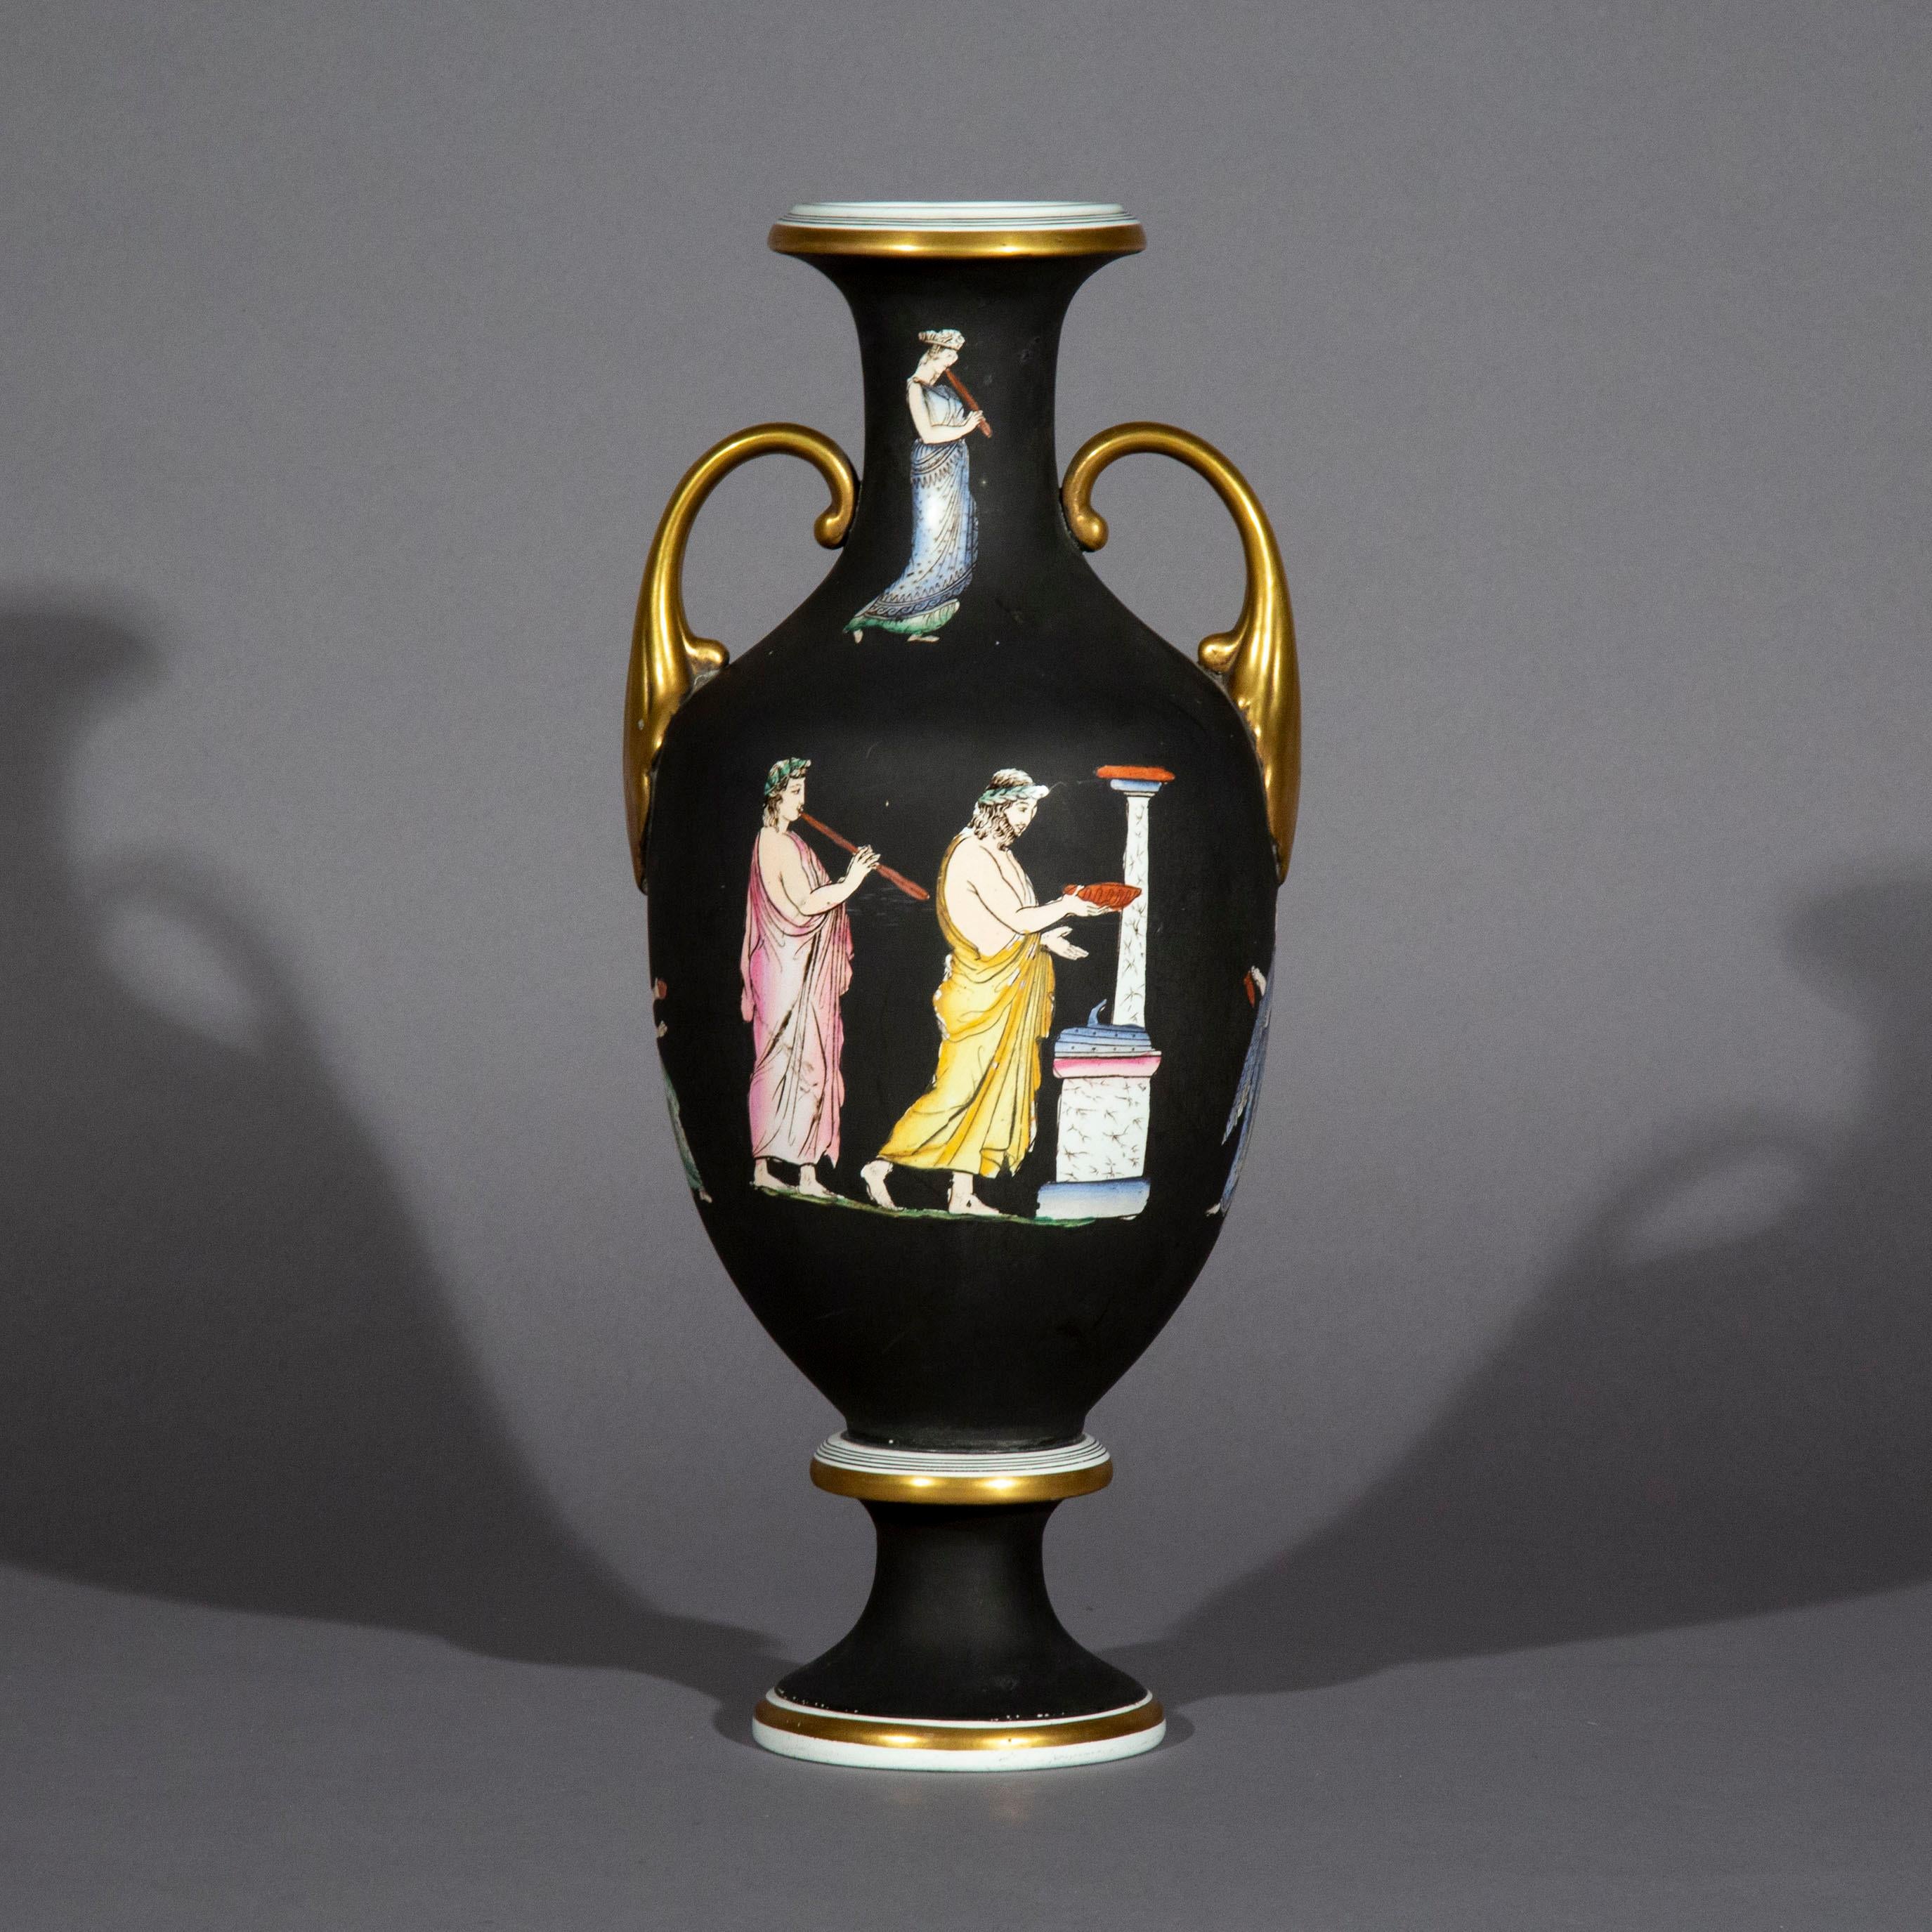 urn style vase